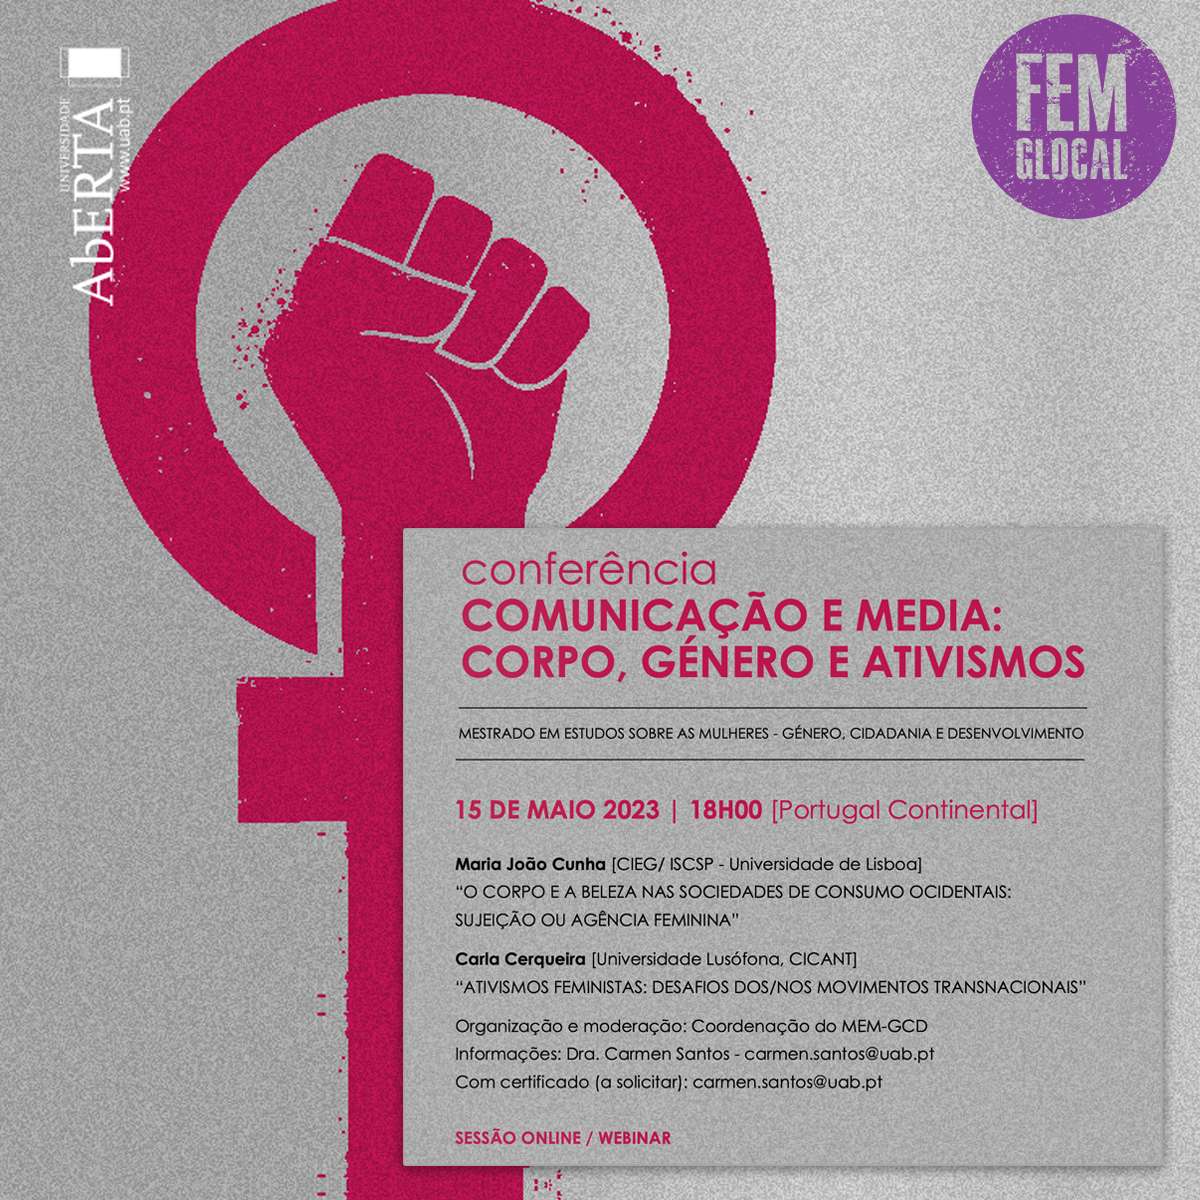 Ativismos feministas: Desafios dos/nos movimentos transnacionais